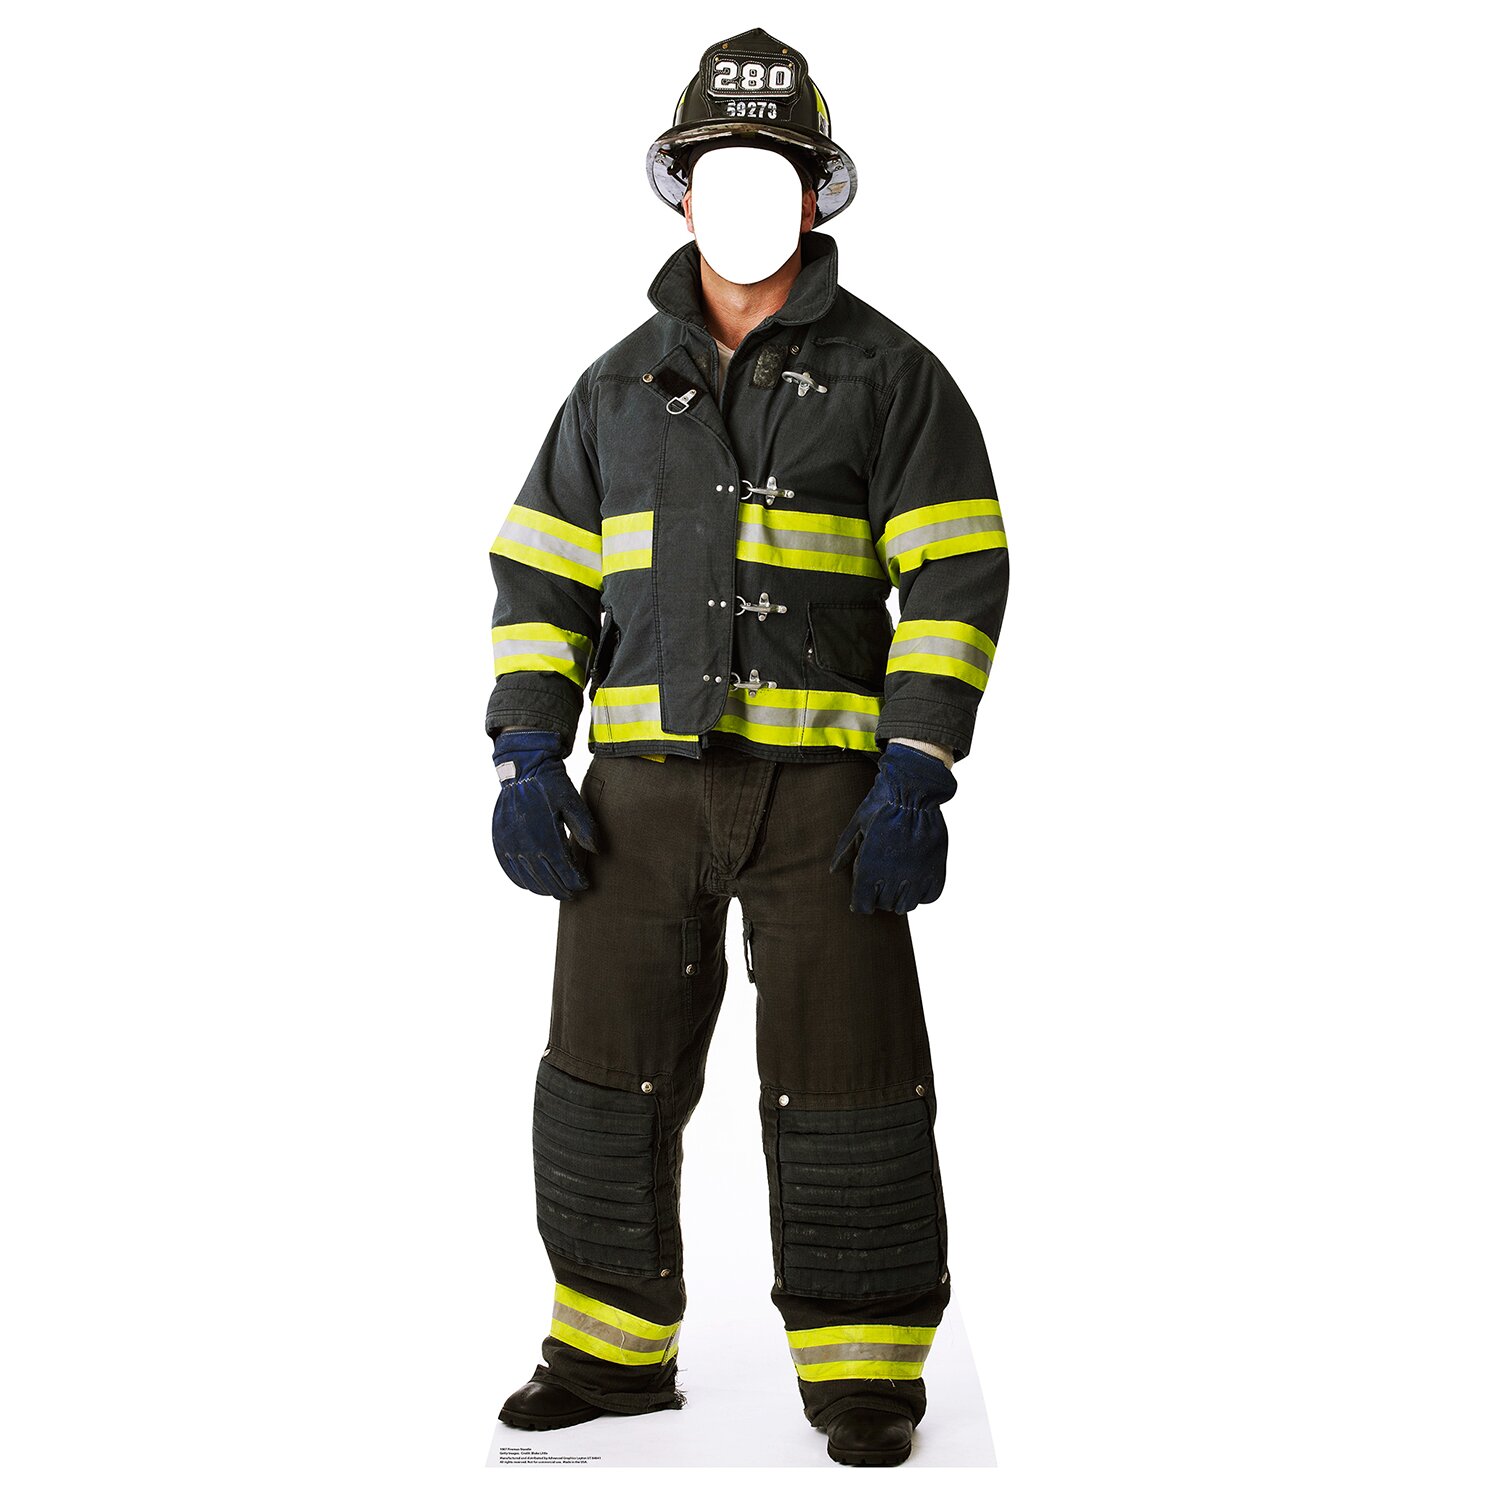 Как выглядит пожарник. Экипировка пожарного. Американская Боевая одежда пожарного. Форма пожарника. Экипировка пожарного США.